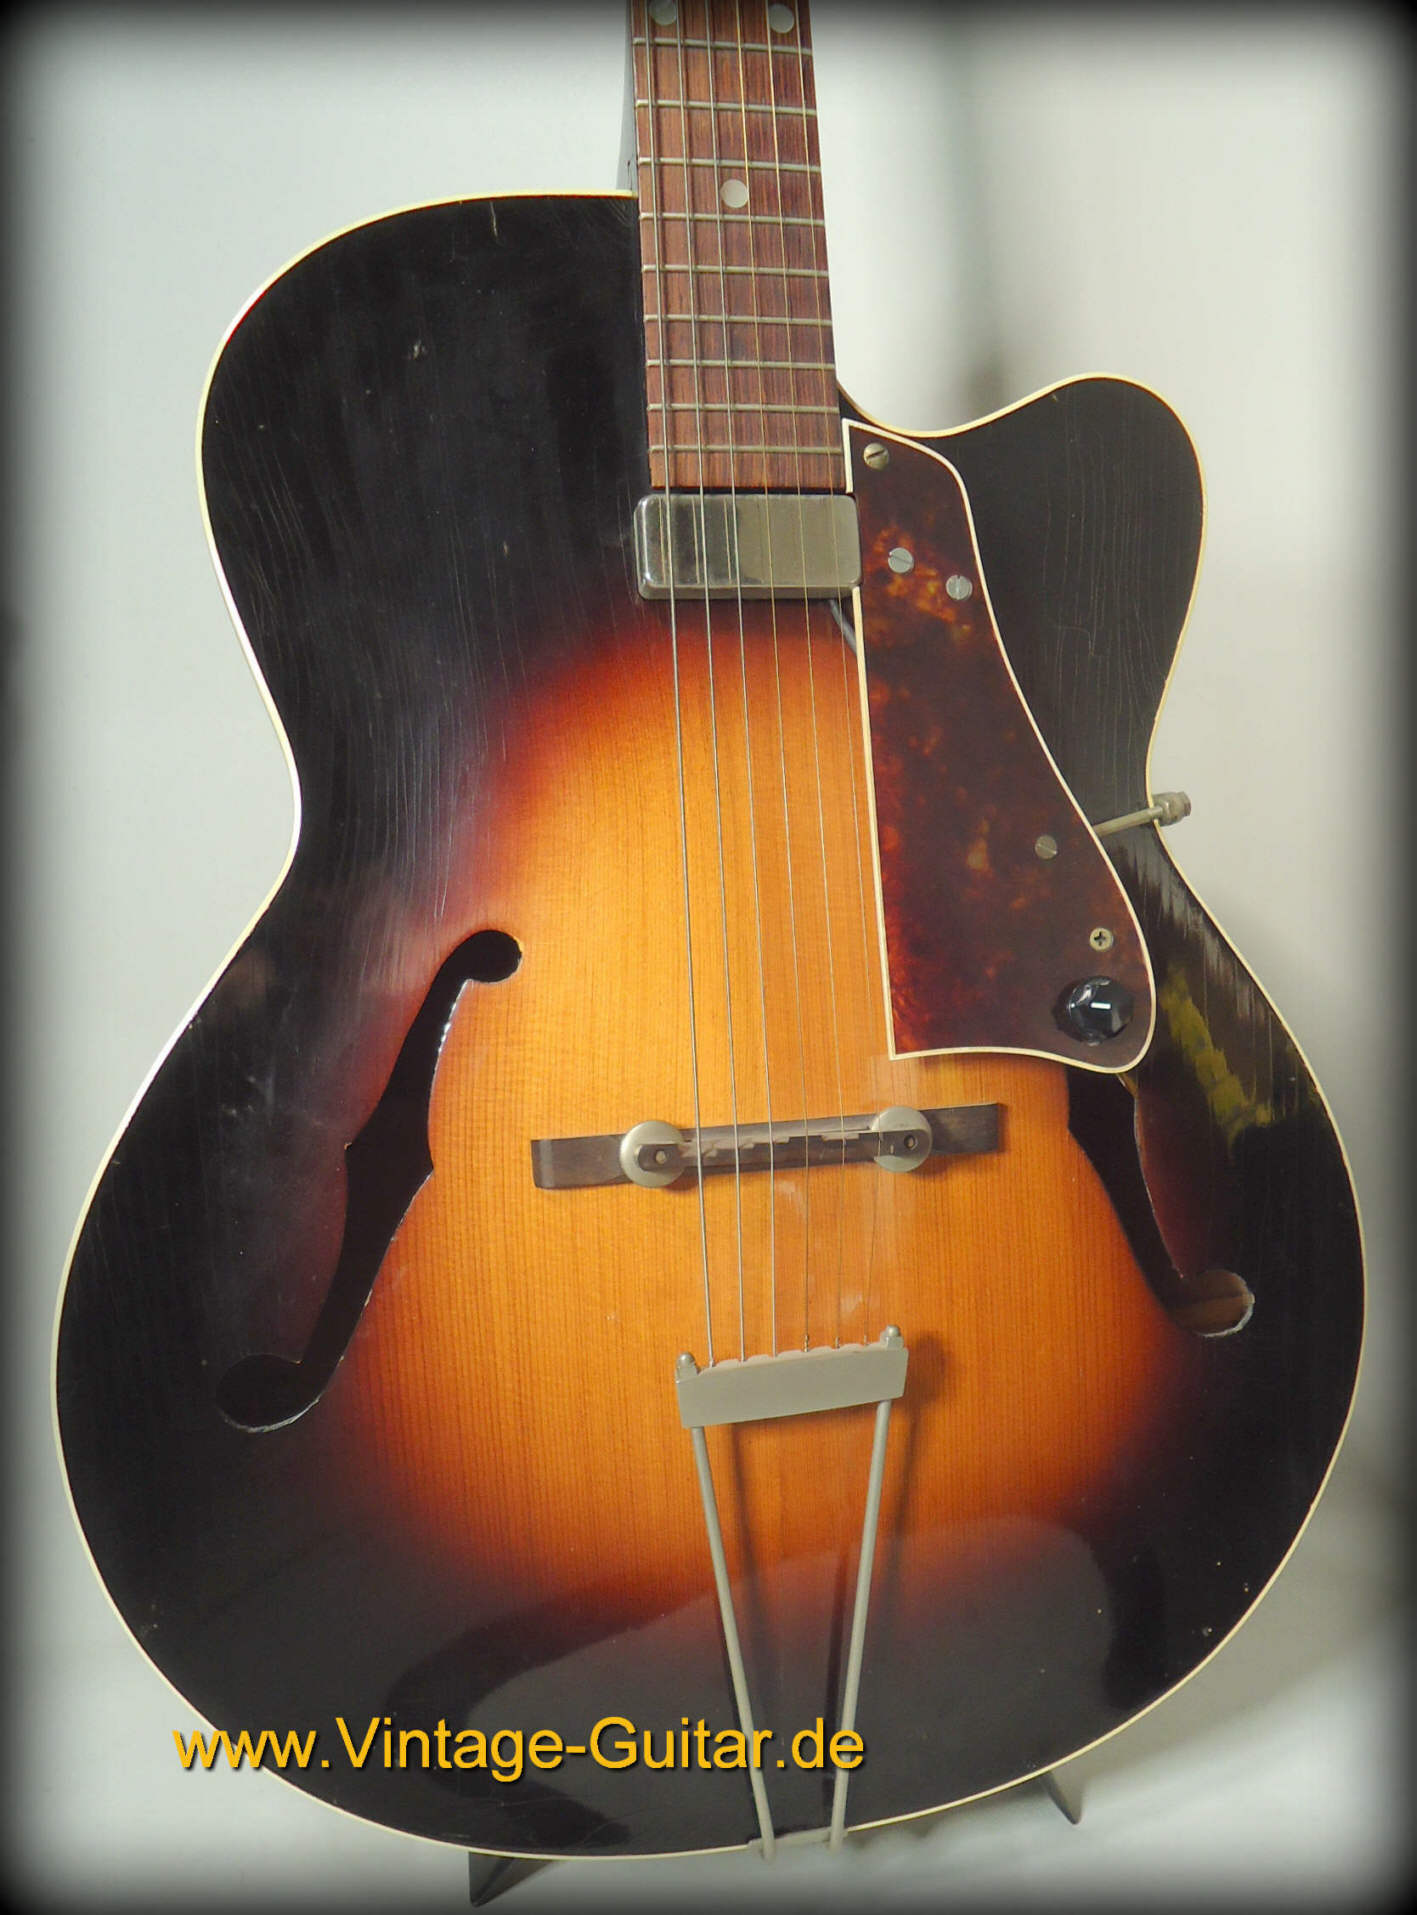 Levin 335 1959 Sunburst Guitar For Sale Vintage Guitar Oldenburg